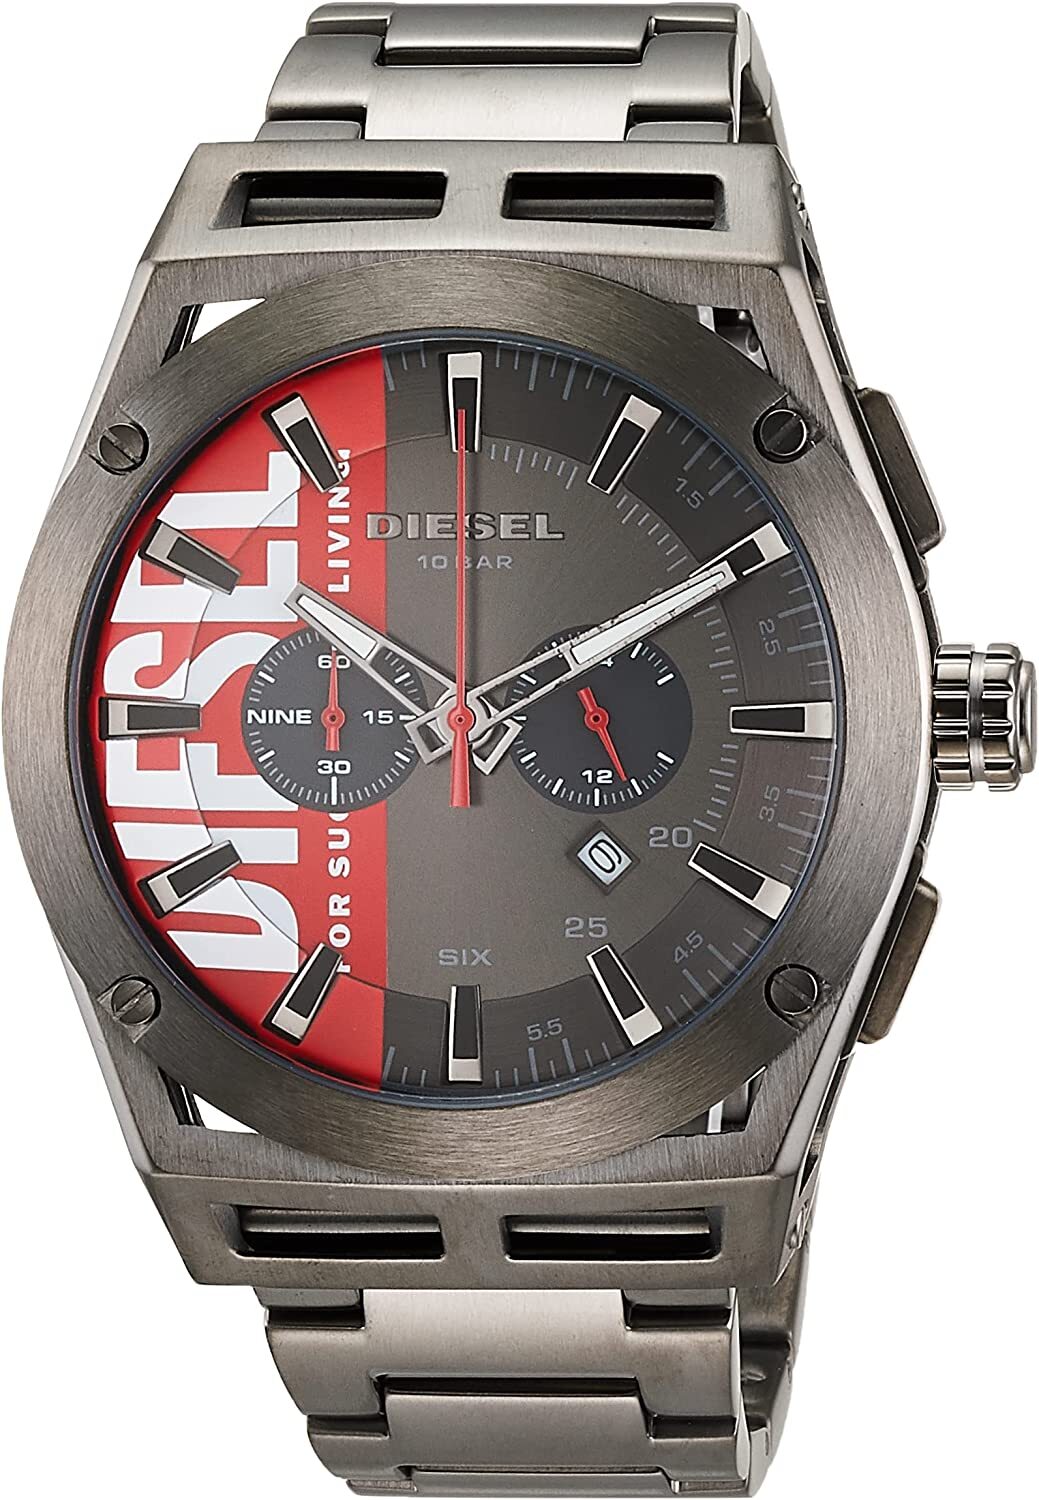 DZ4598 цене Diesel Timeframe - купить выгодной Интернет-магазин часов по швейцарских Часы | мужские